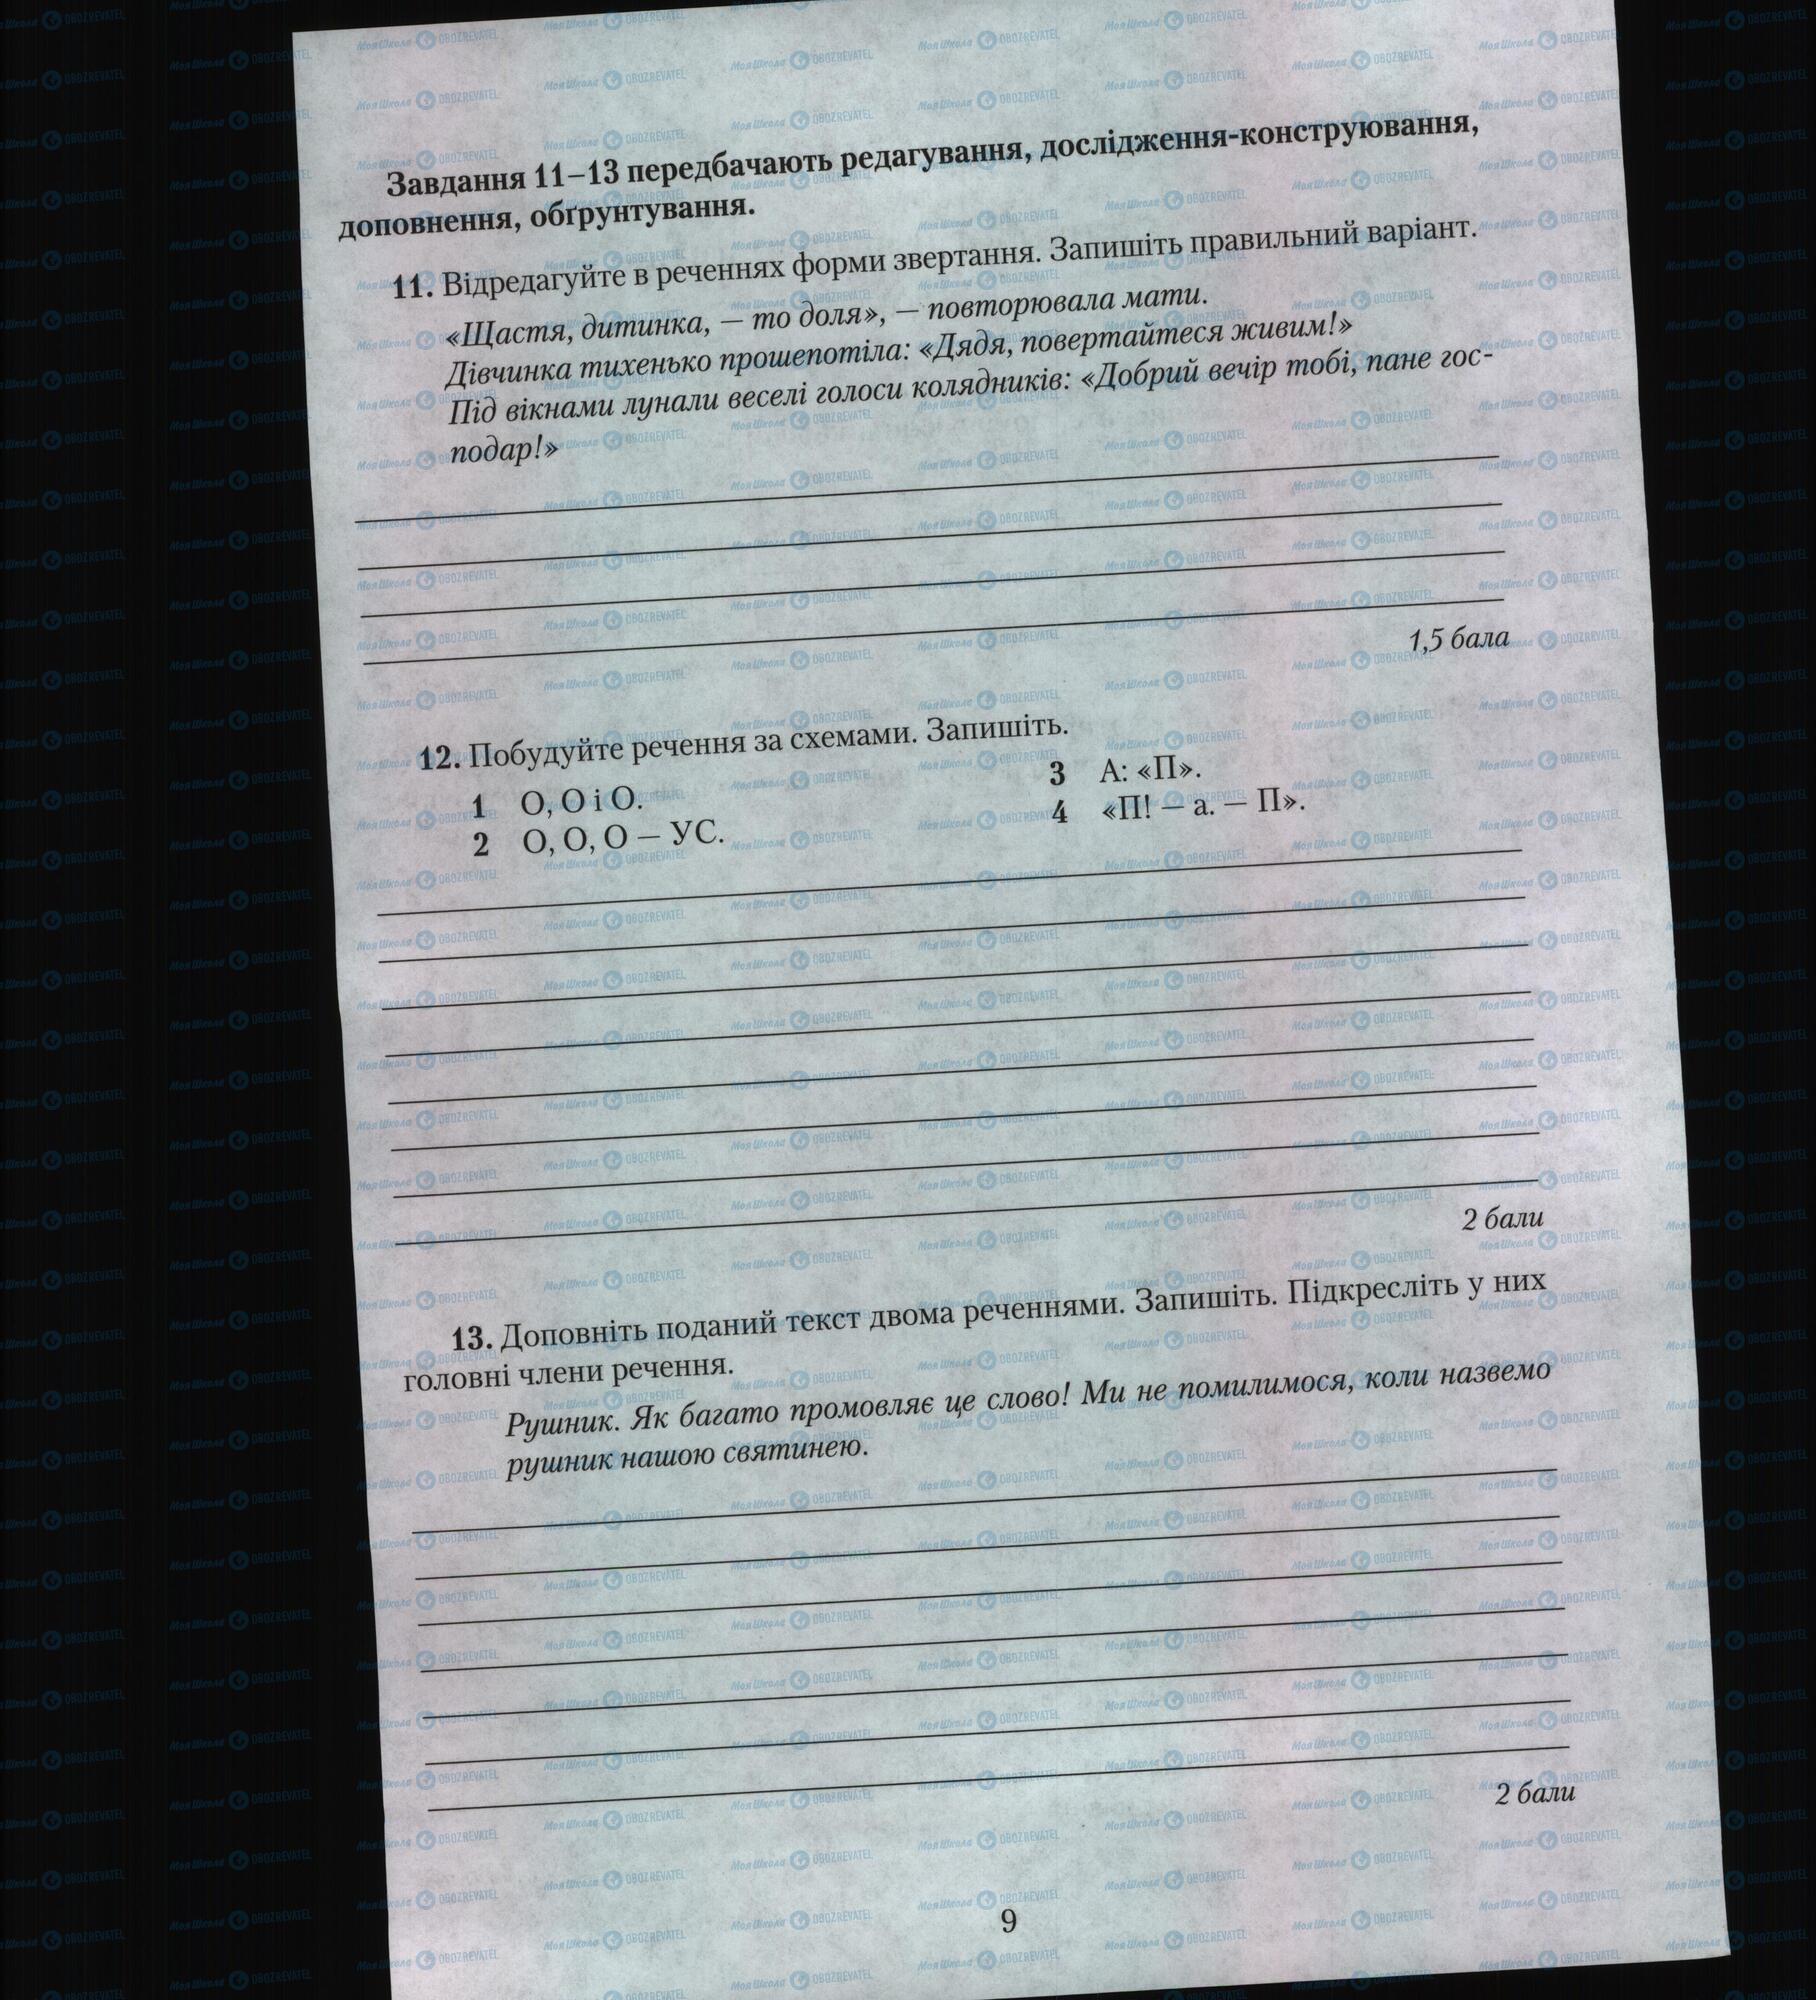 Підручники Українська мова 6 клас сторінка 9